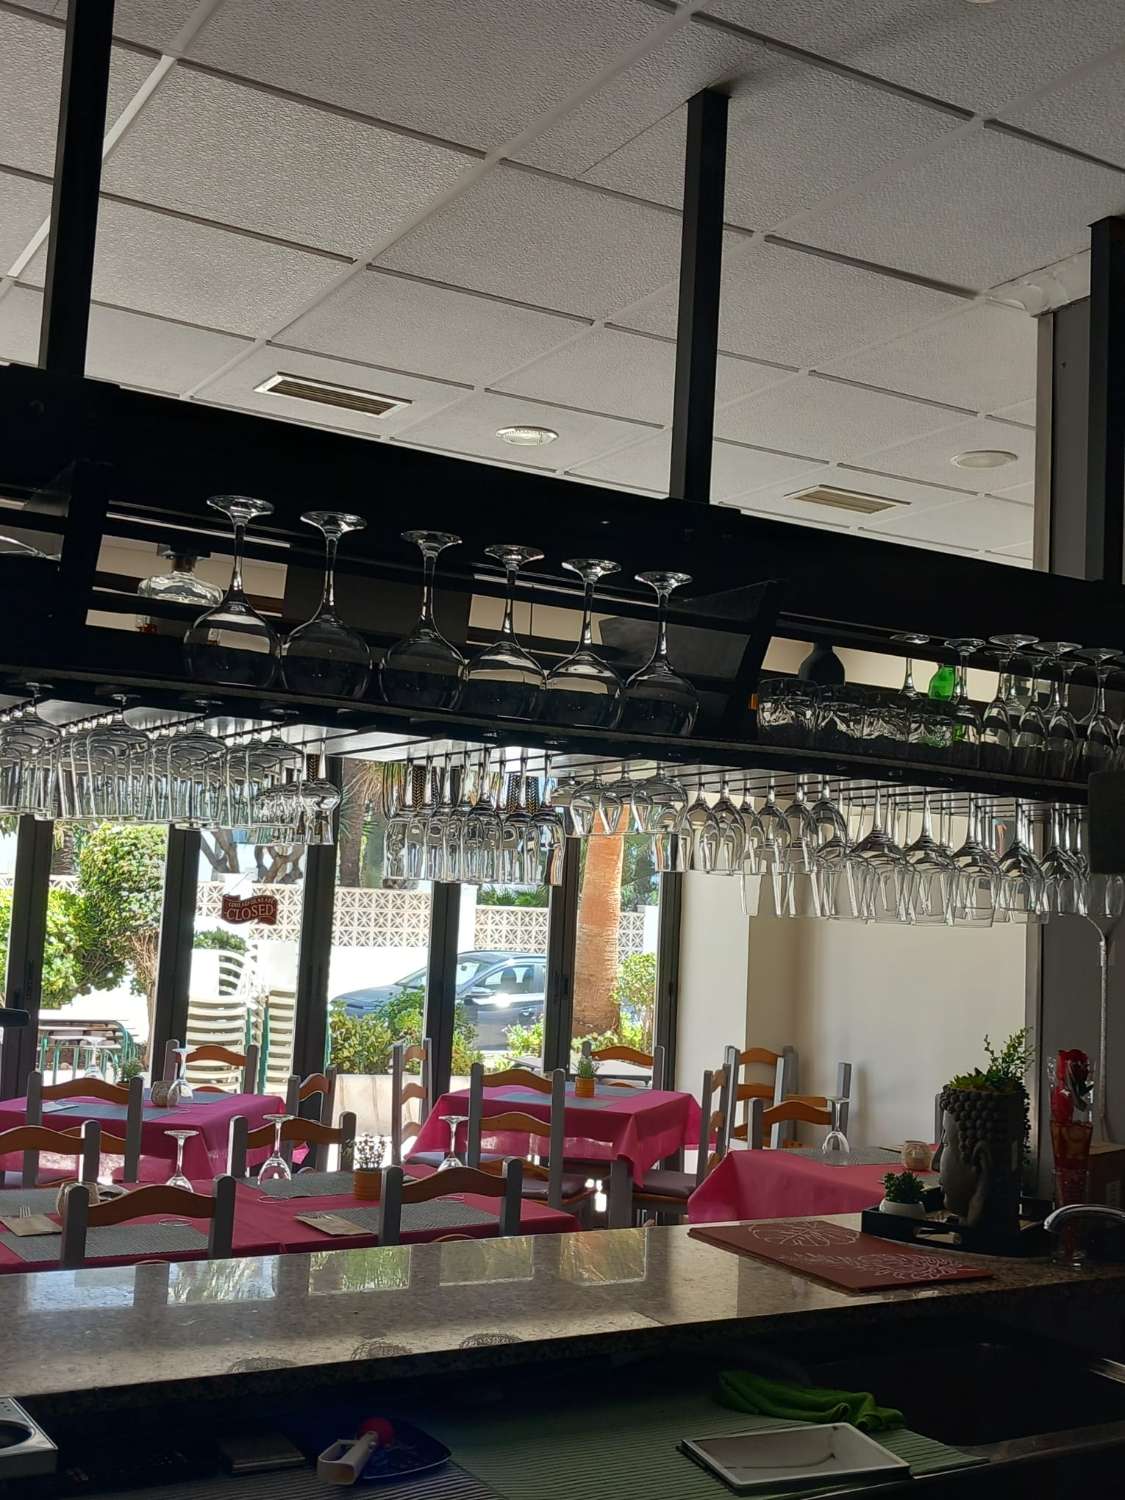 Restaurant overførsel i Chaparil (Nerja)